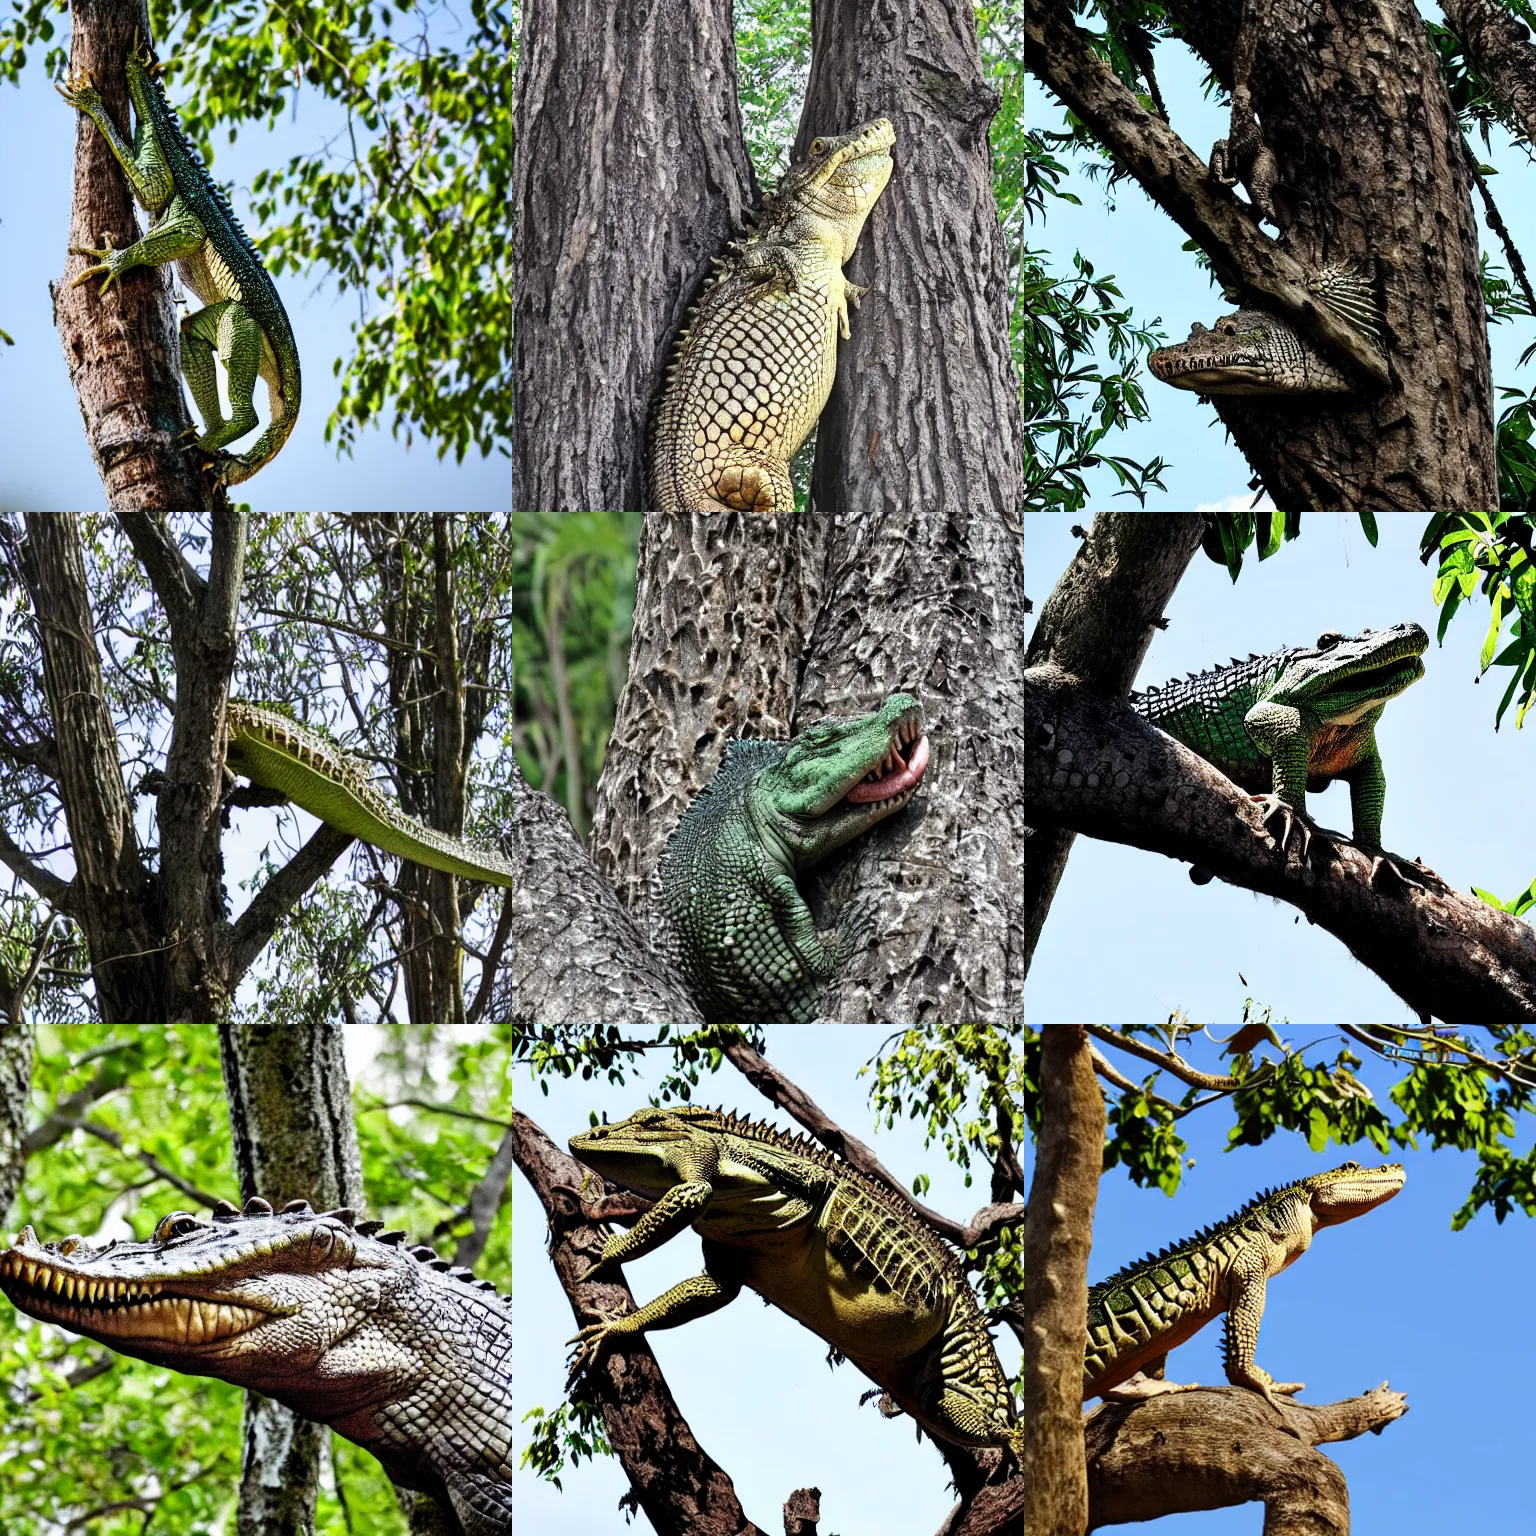 Prompt: crocodile on a tree